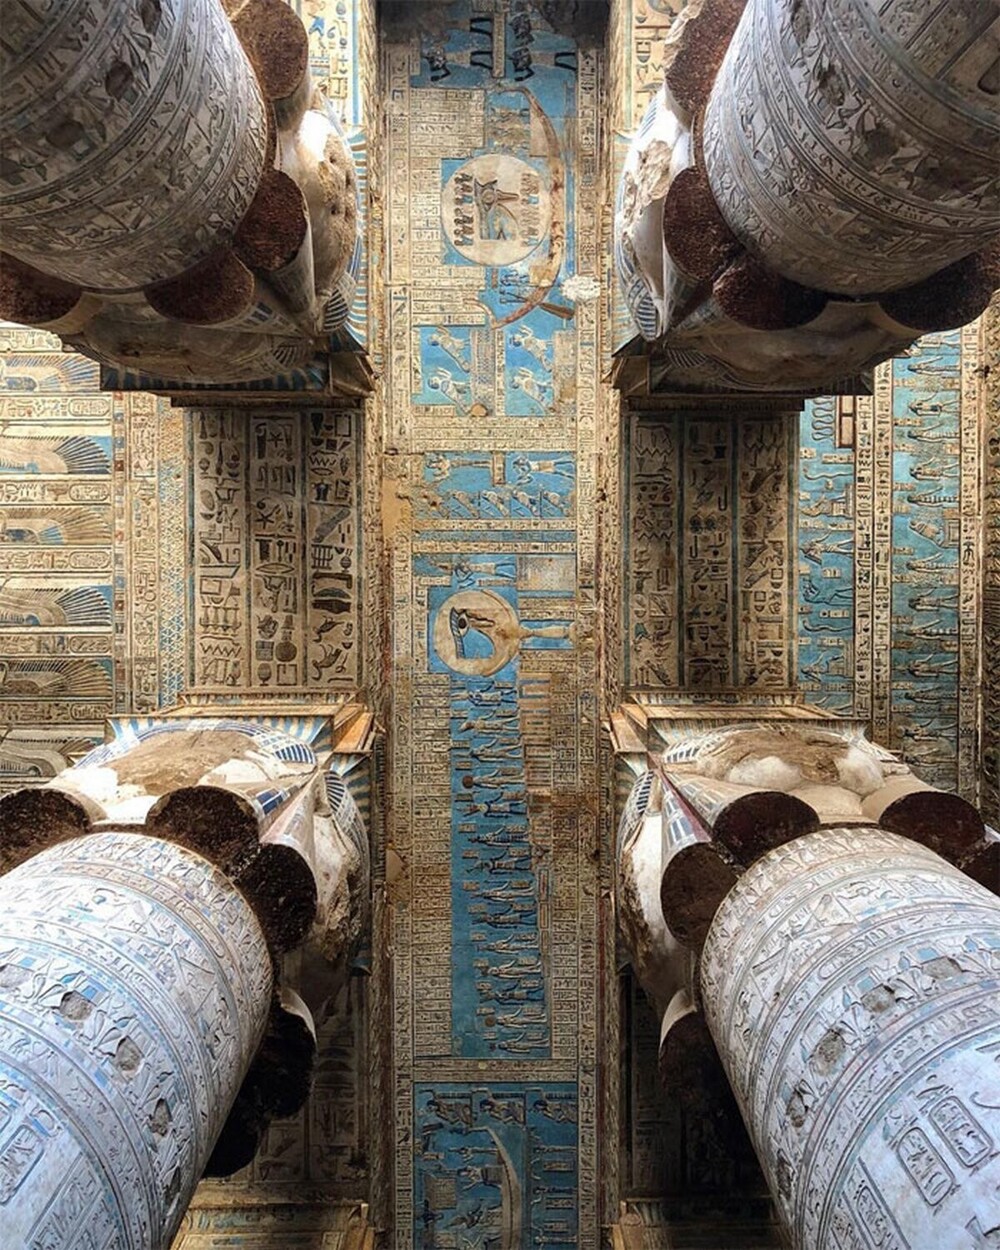 Храму Хатхор 2000 лет, и он стоит до сих пор. Это один из наиболее хорошо сохранившихся храмов Египта